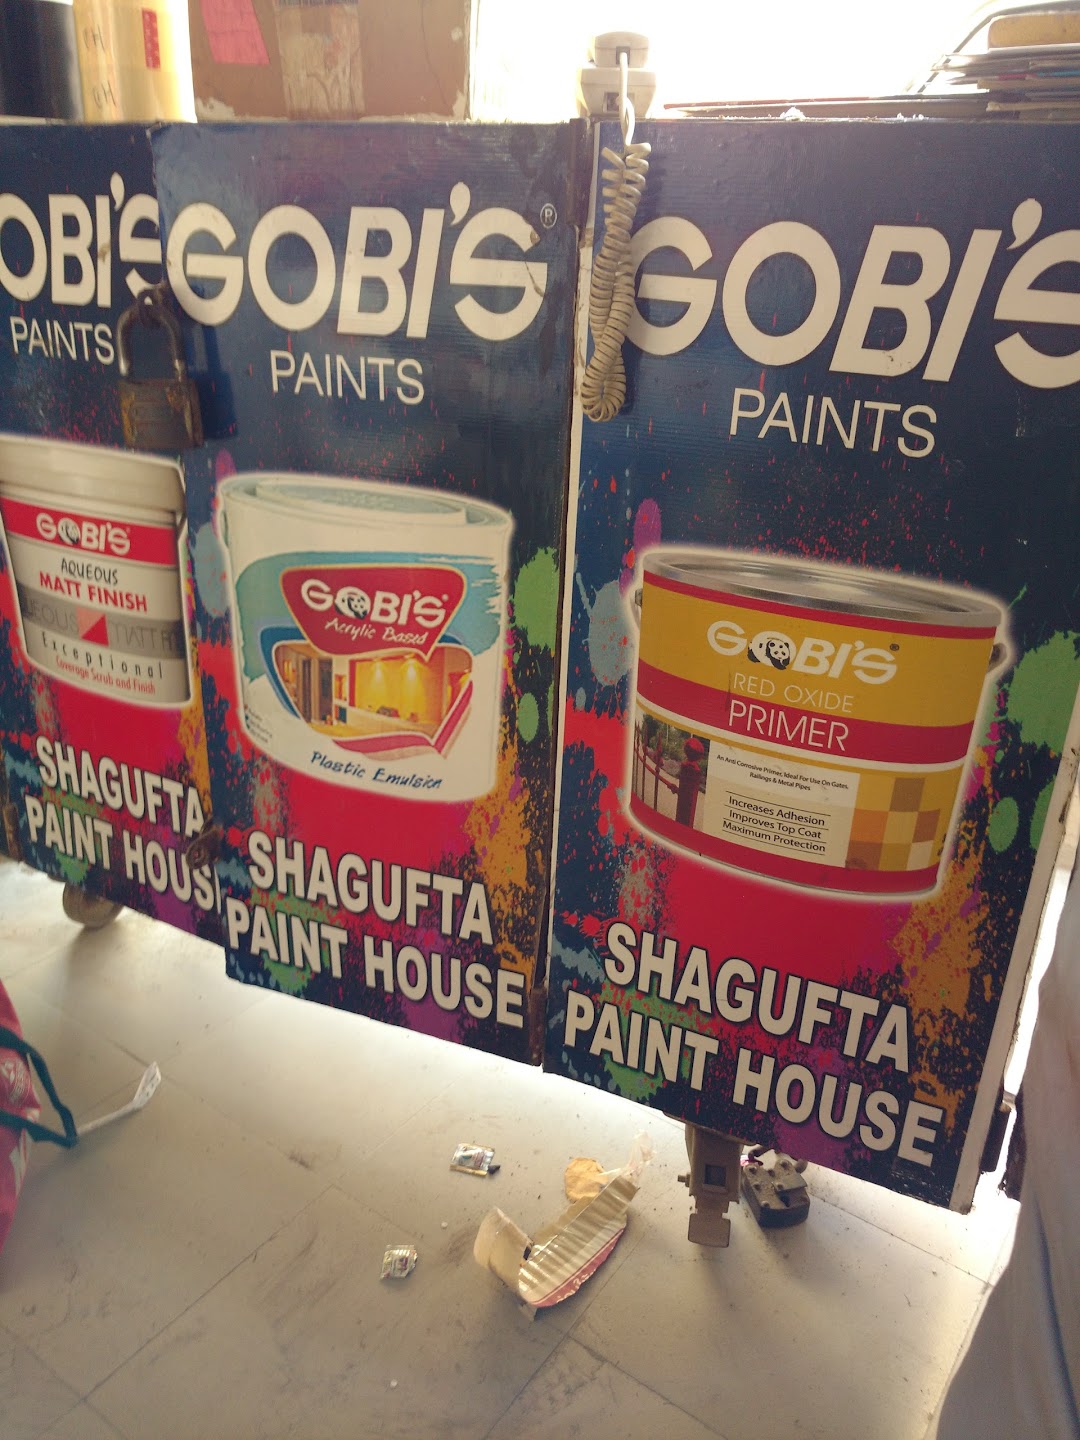 Shagufta Paint House